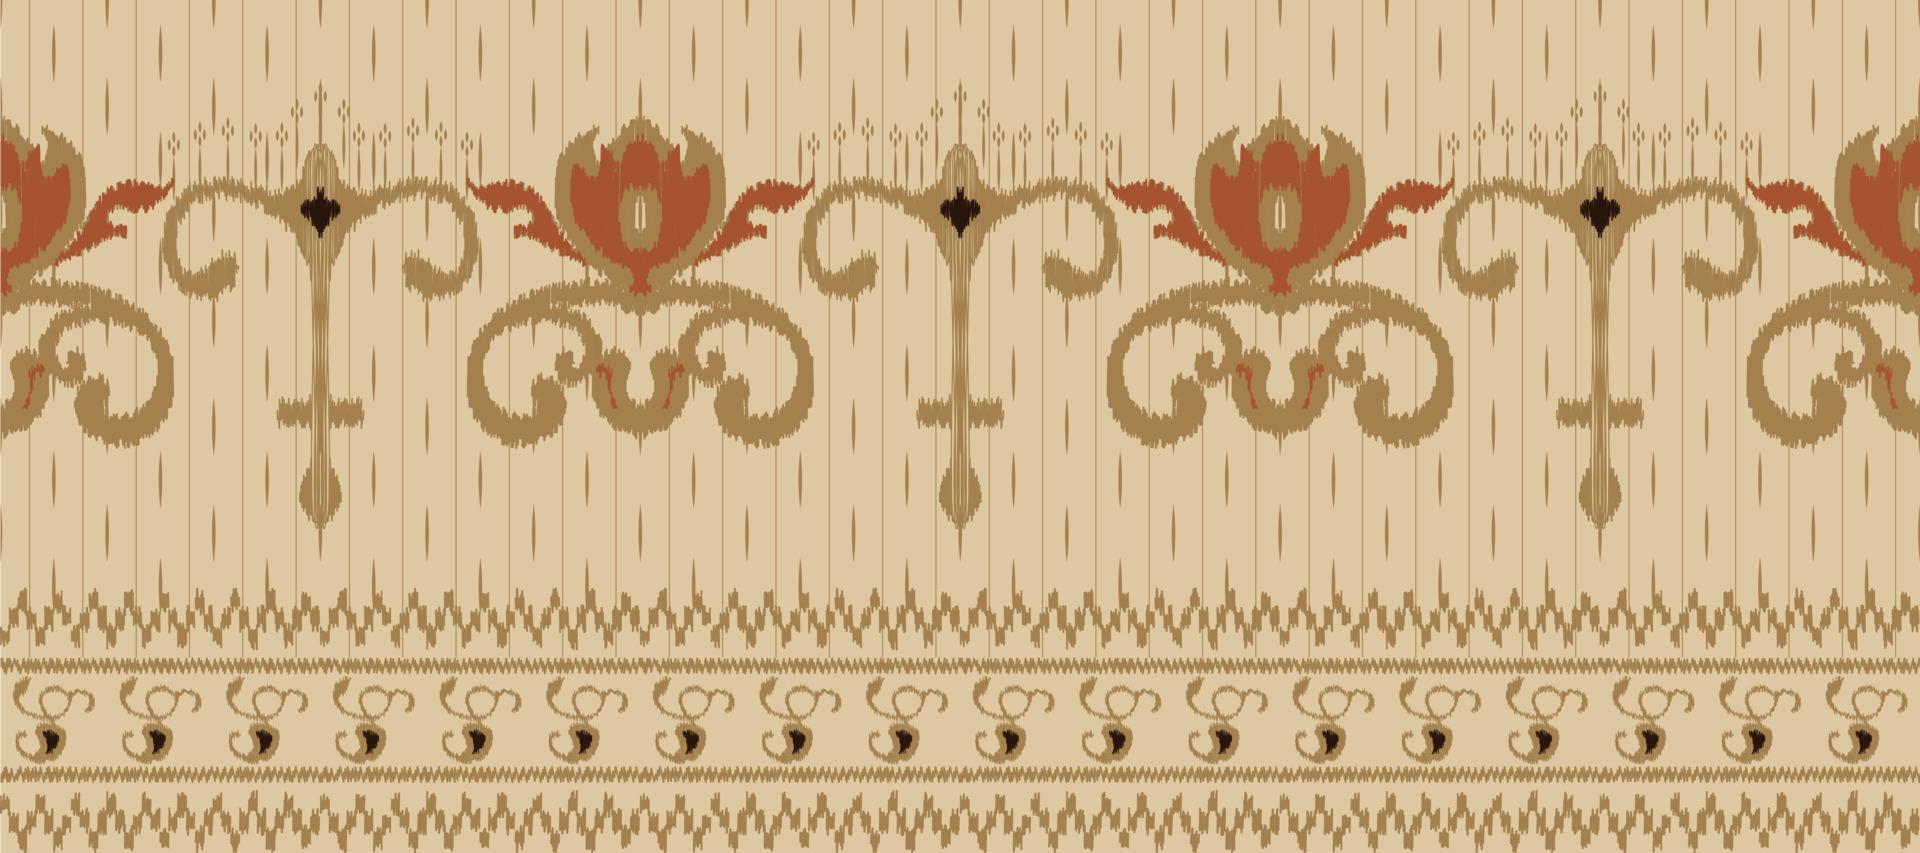 motief ikat bloemen paisley borduurwerk achtergrond. meetkundig etnisch oosters patroon traditioneel. ikat aztec stijl abstract vector illustratie. ontwerp voor afdrukken textuur,stof,sari,sari,tapijt.